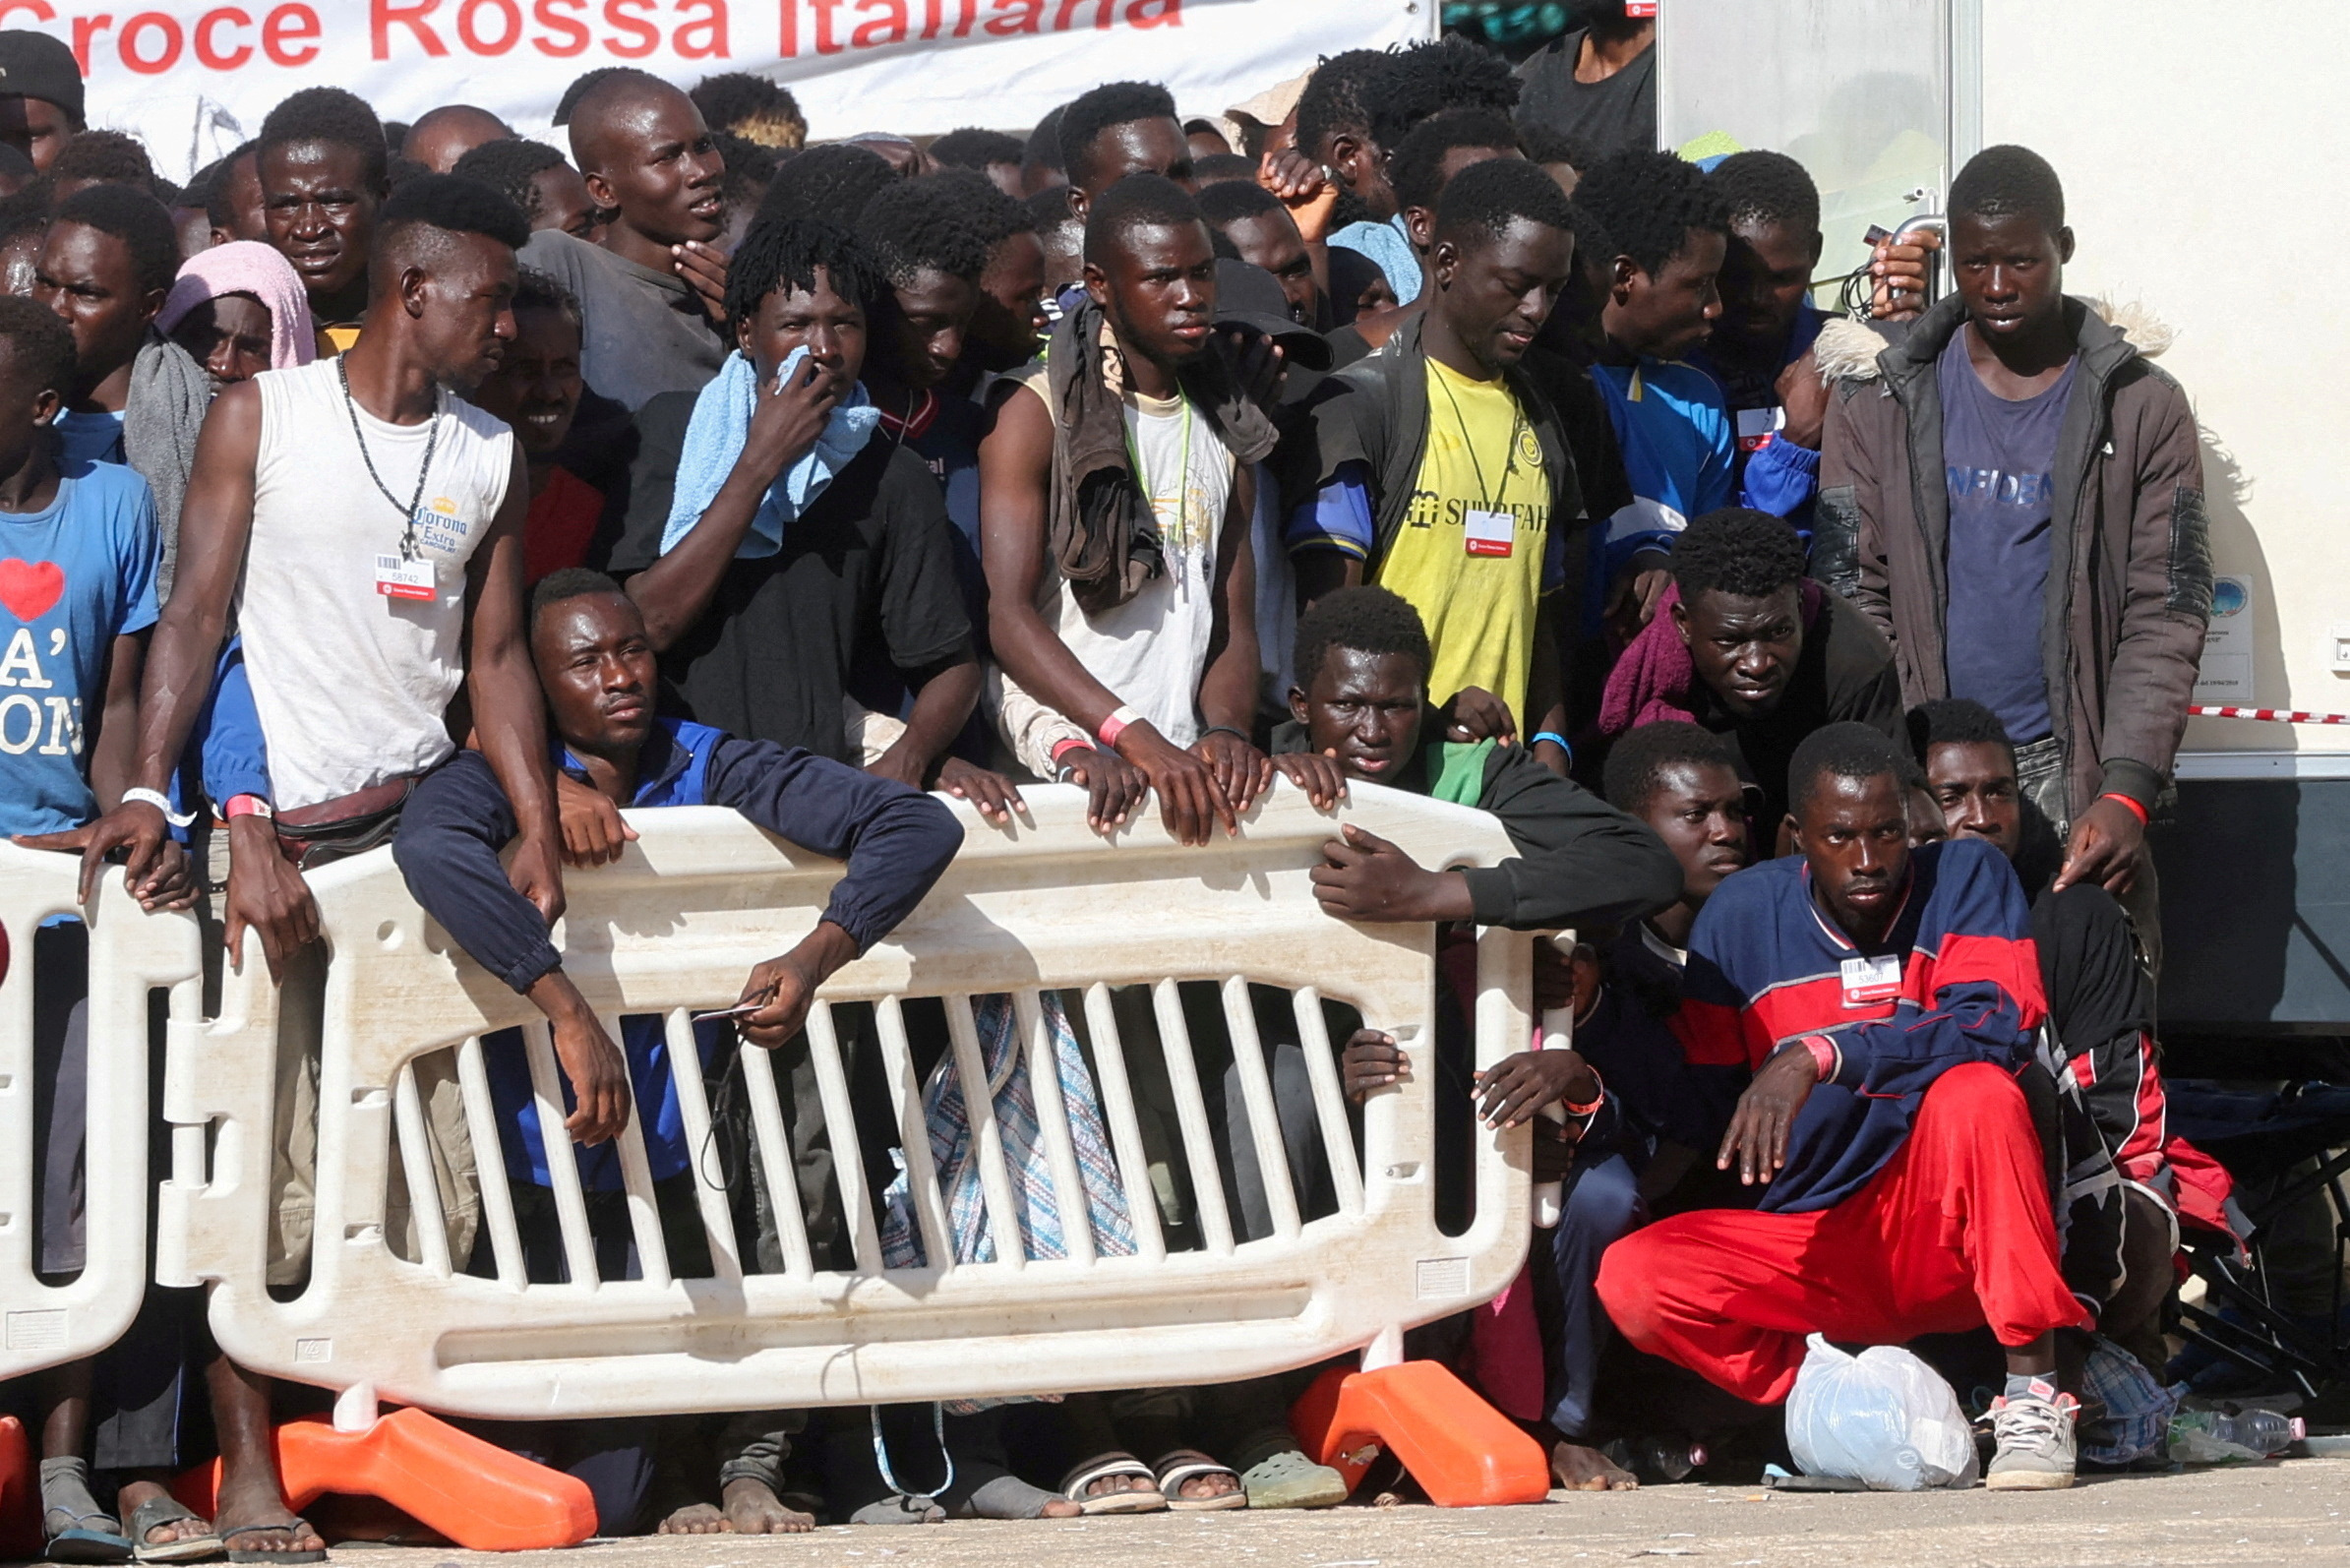 Ιταλία: Πάνω από χίλιοι μετανάστες στο λιμάνι Εμπέντοκλε στη Σικελία